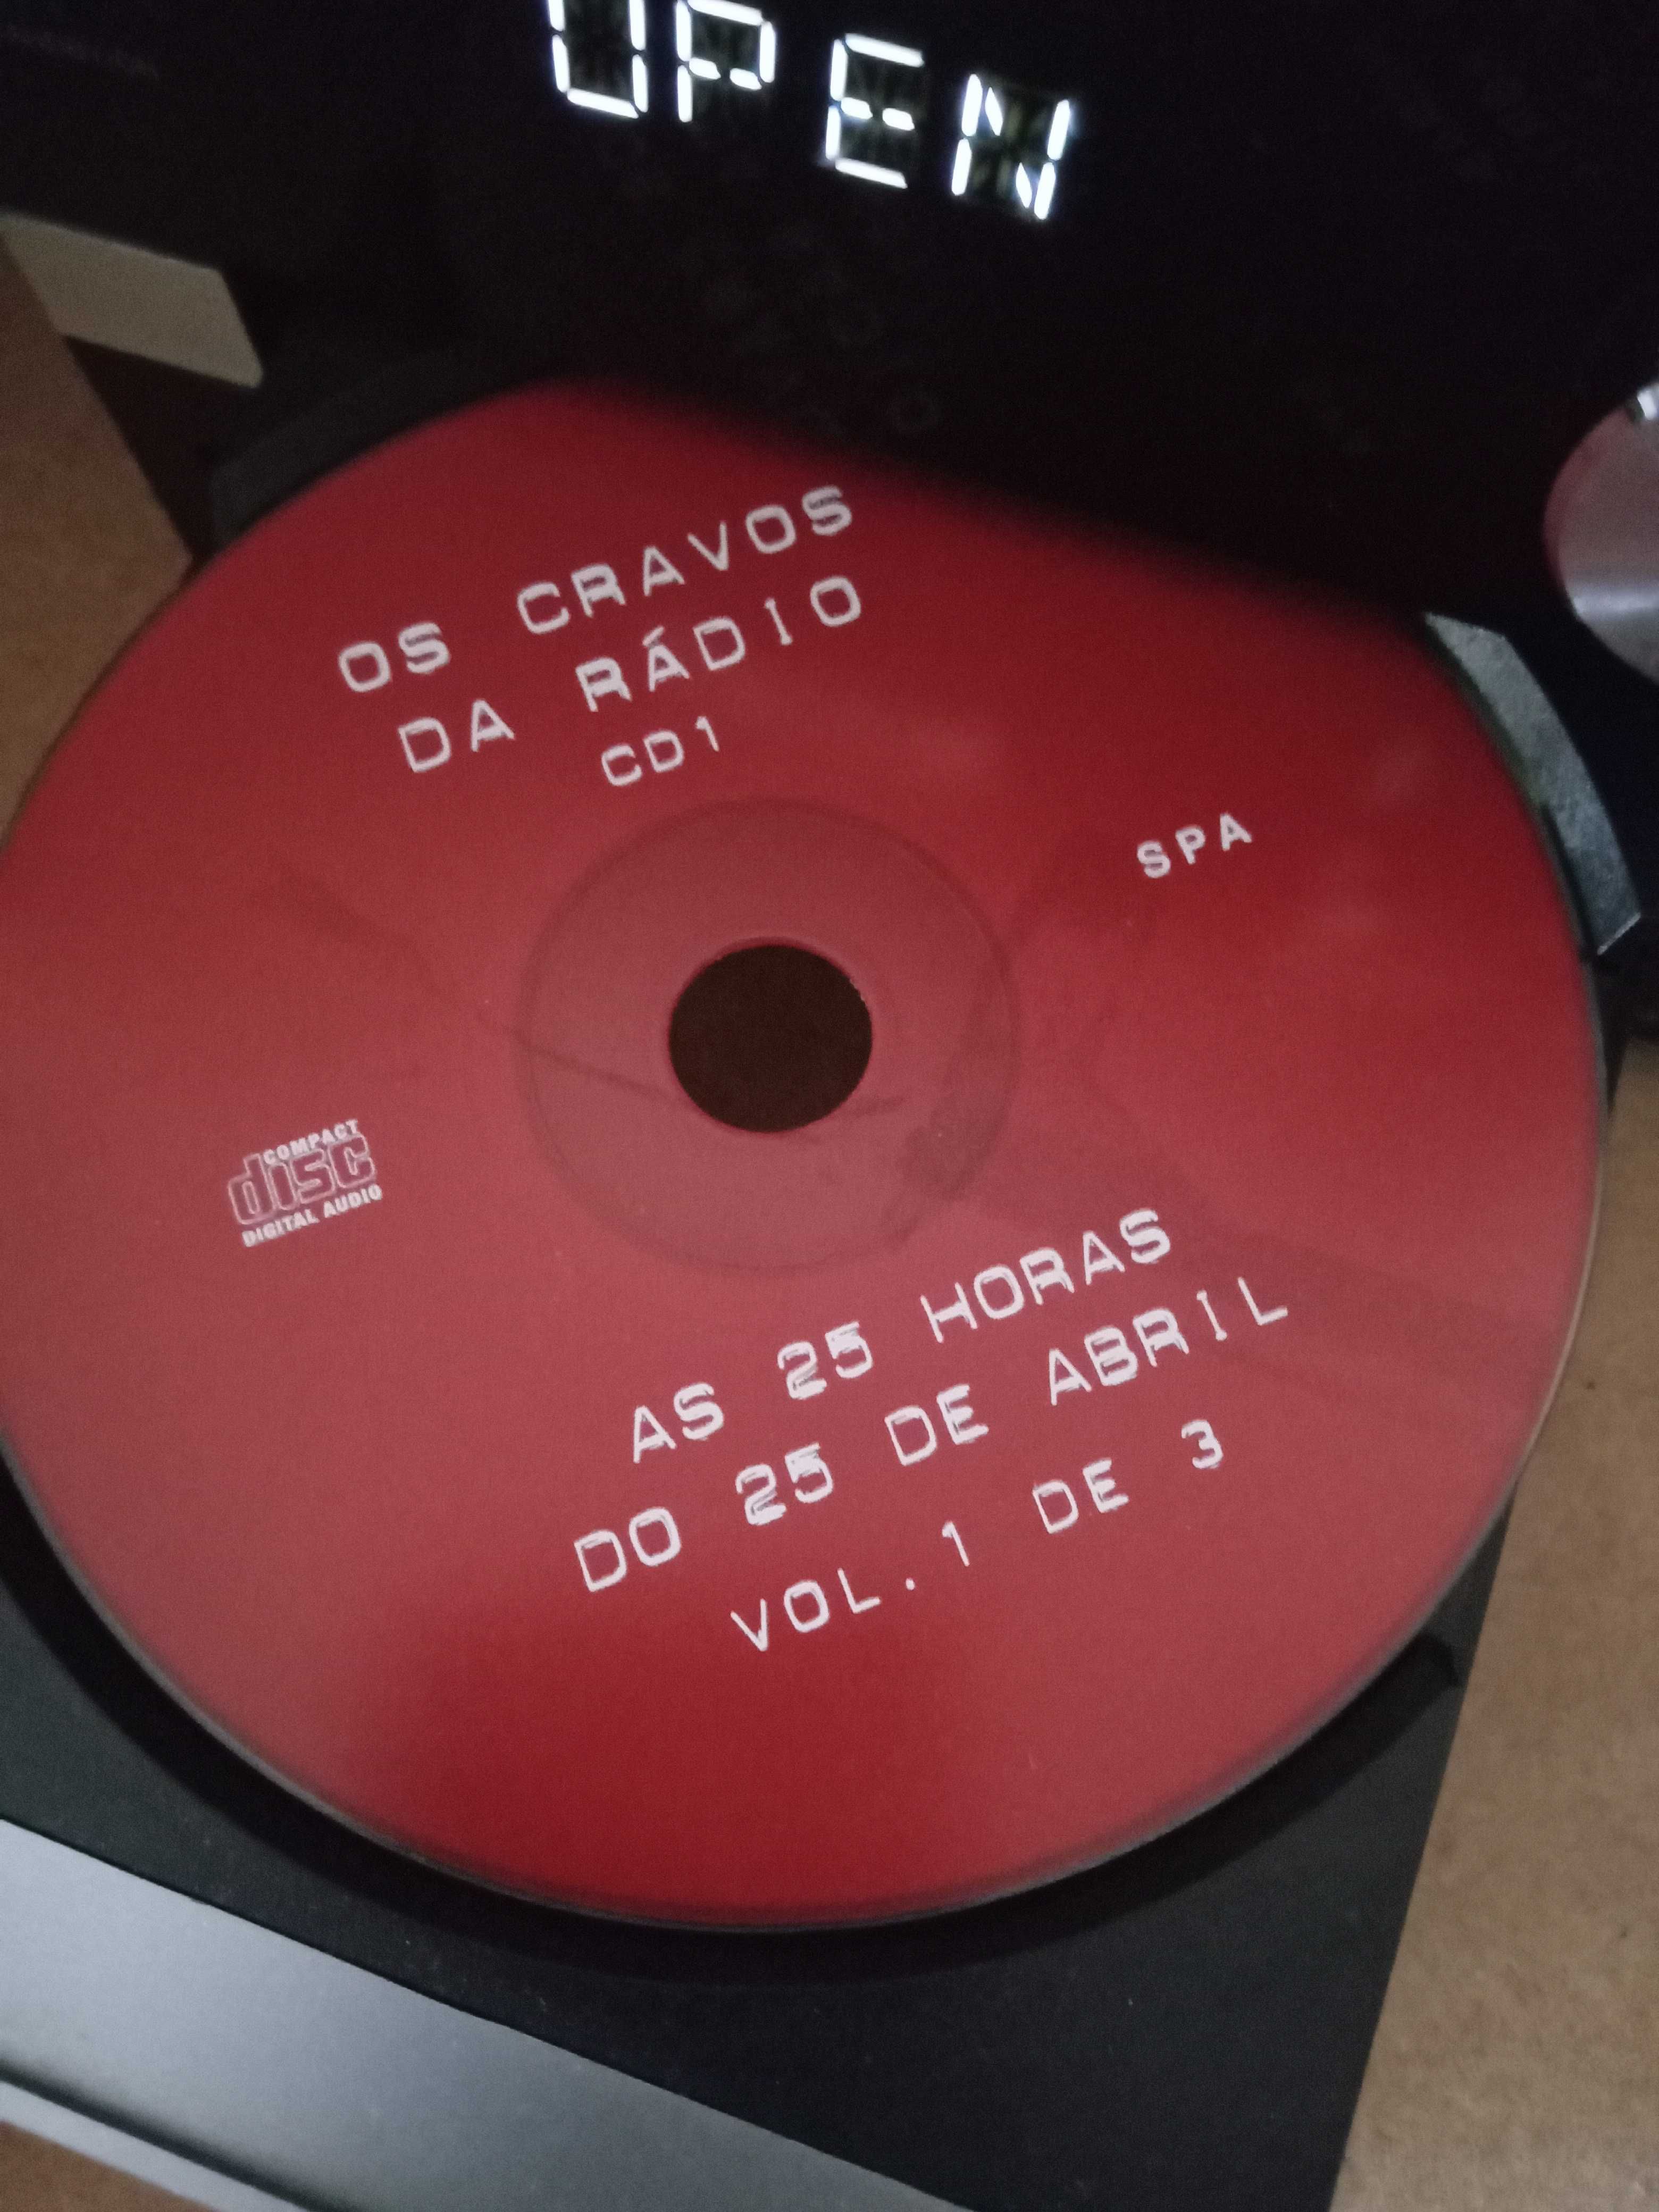 CD - volume 1 Os Cravos da Rádio
As 25 horas do 25 de AbrIl